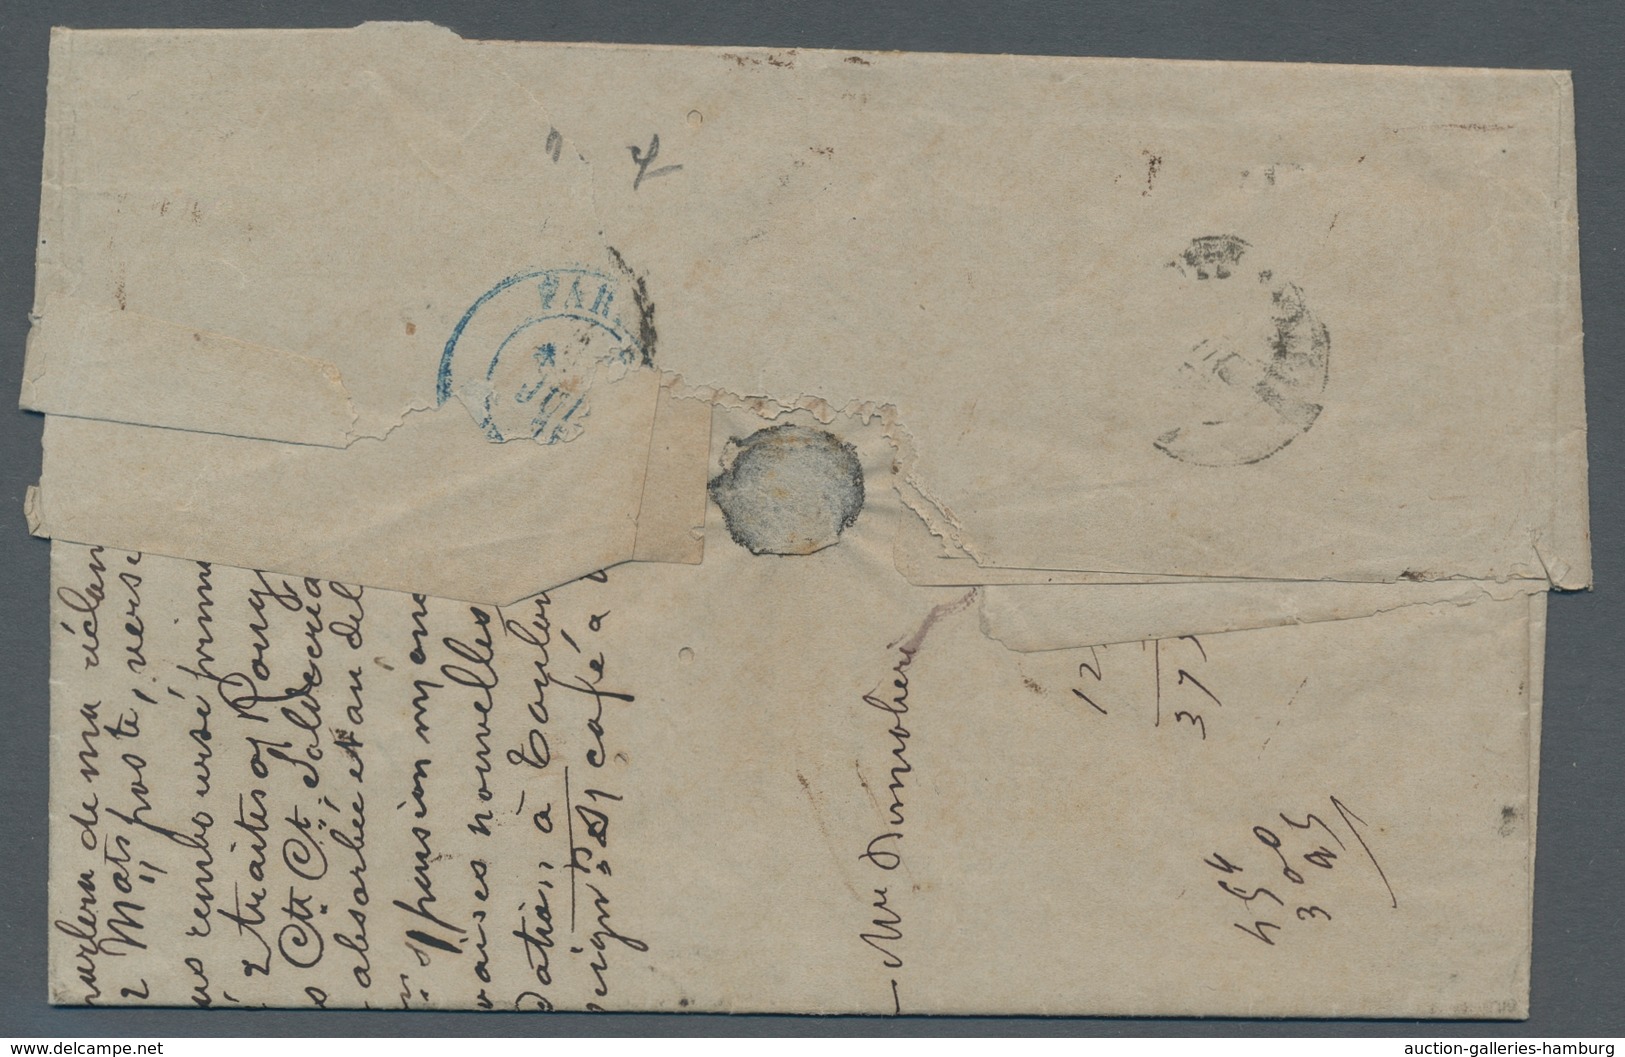 Reunion: 1854-1912, ungemein reichhaltige Sammlung von 190 frankierten Briefen, Karten, Briefvorders